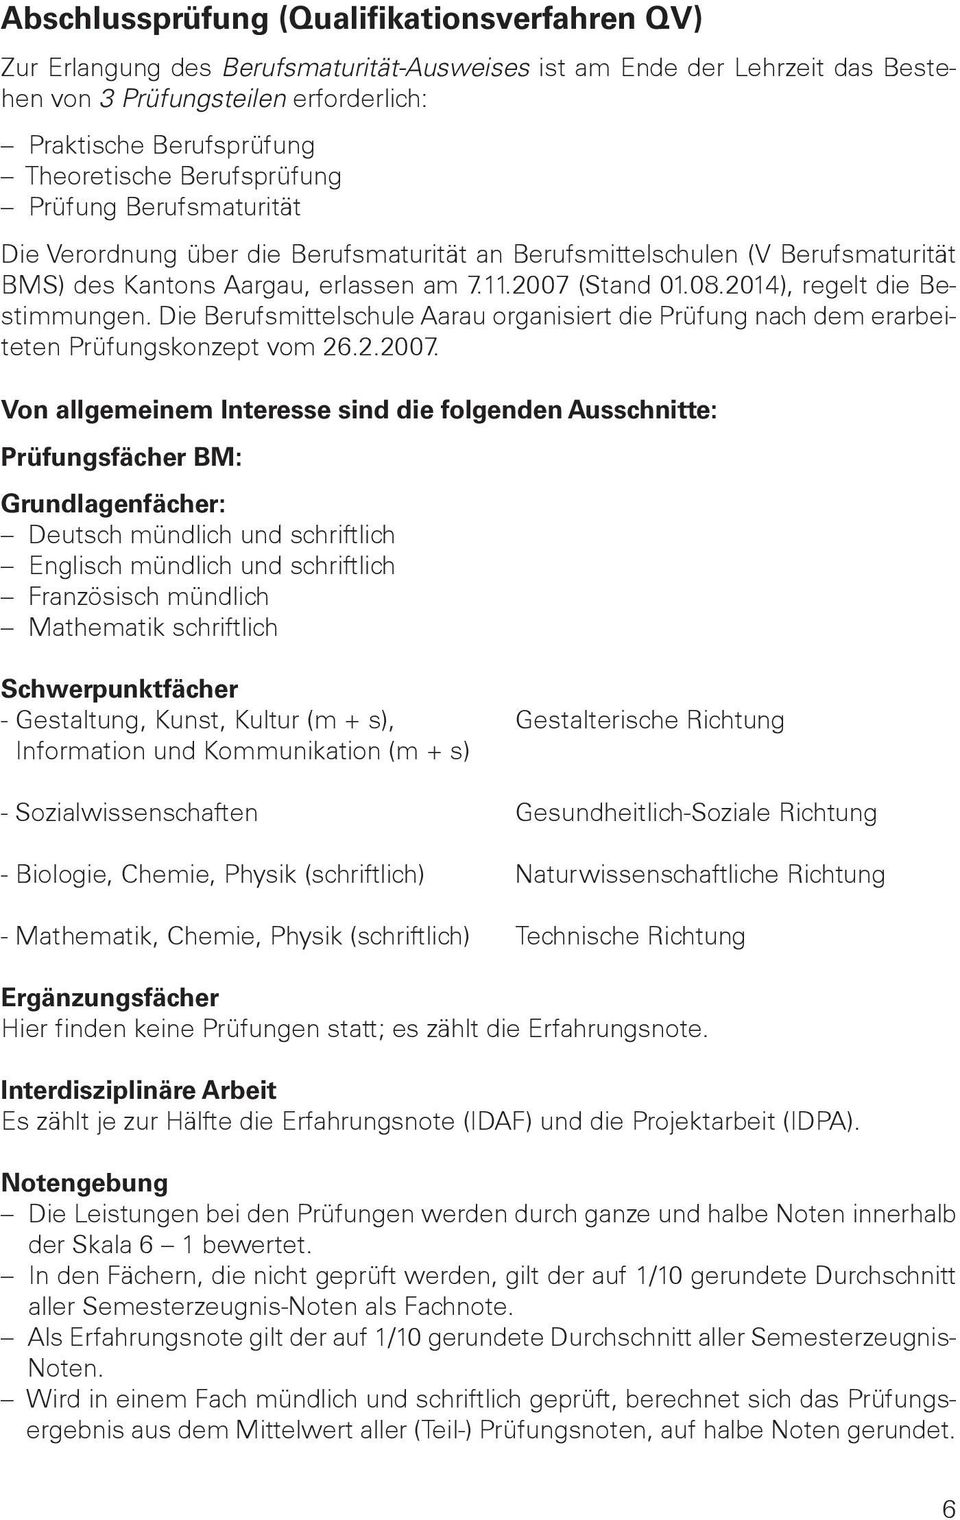 2014), regelt die Bestimmungen. Die Berufsmittelschule Aarau organisiert die Prüfung nach dem erarbeiteten Prüfungskonzept vom 26.2.7.